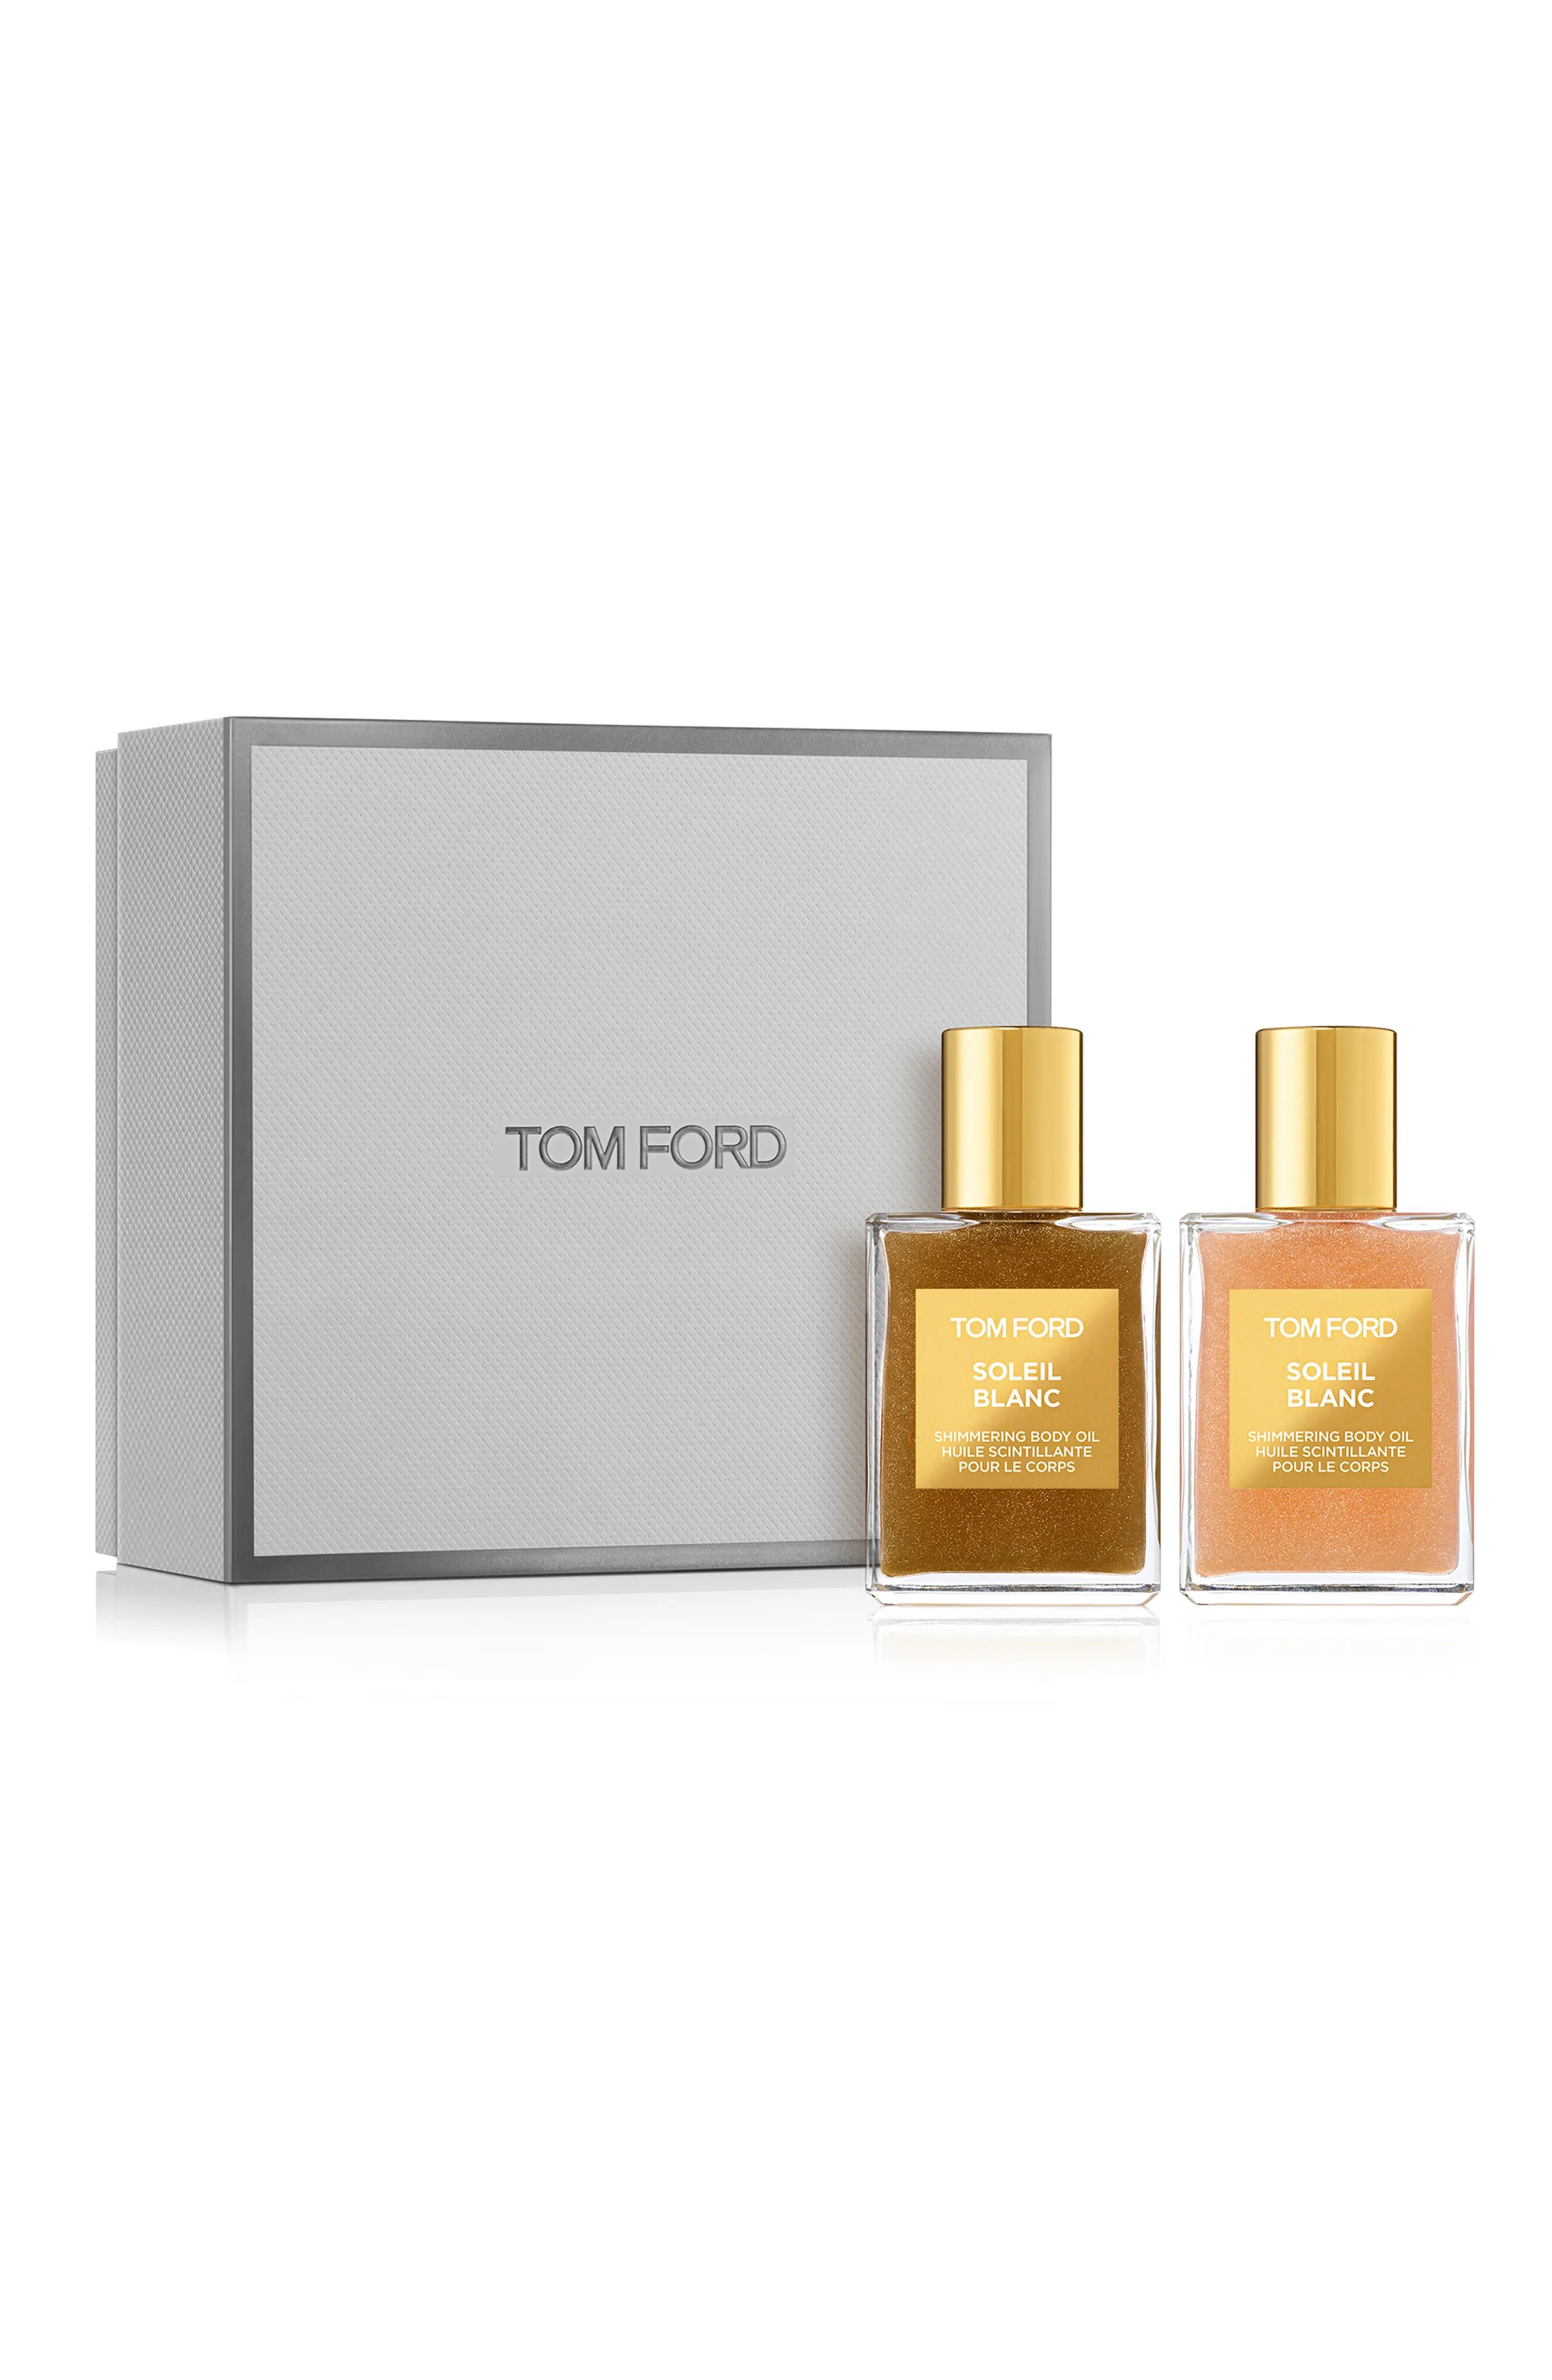 Tom Ford Soleil Blanc Body Oil Set-$90 Value at Nordstrom | Nordstrom